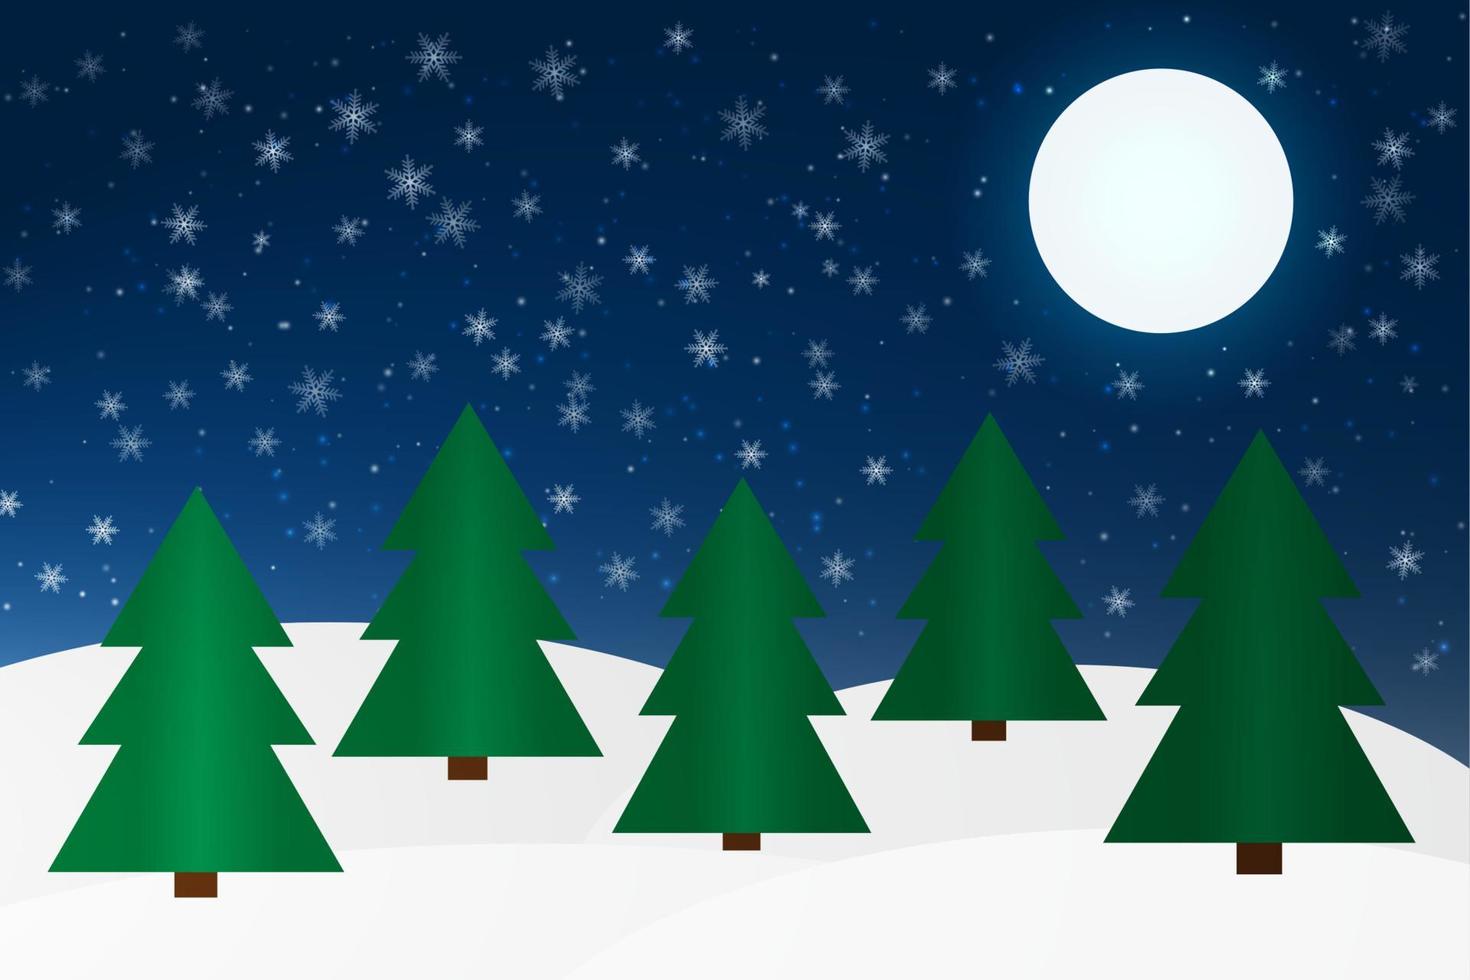 vinter- skog med gran träd och månsken på natt. vektor